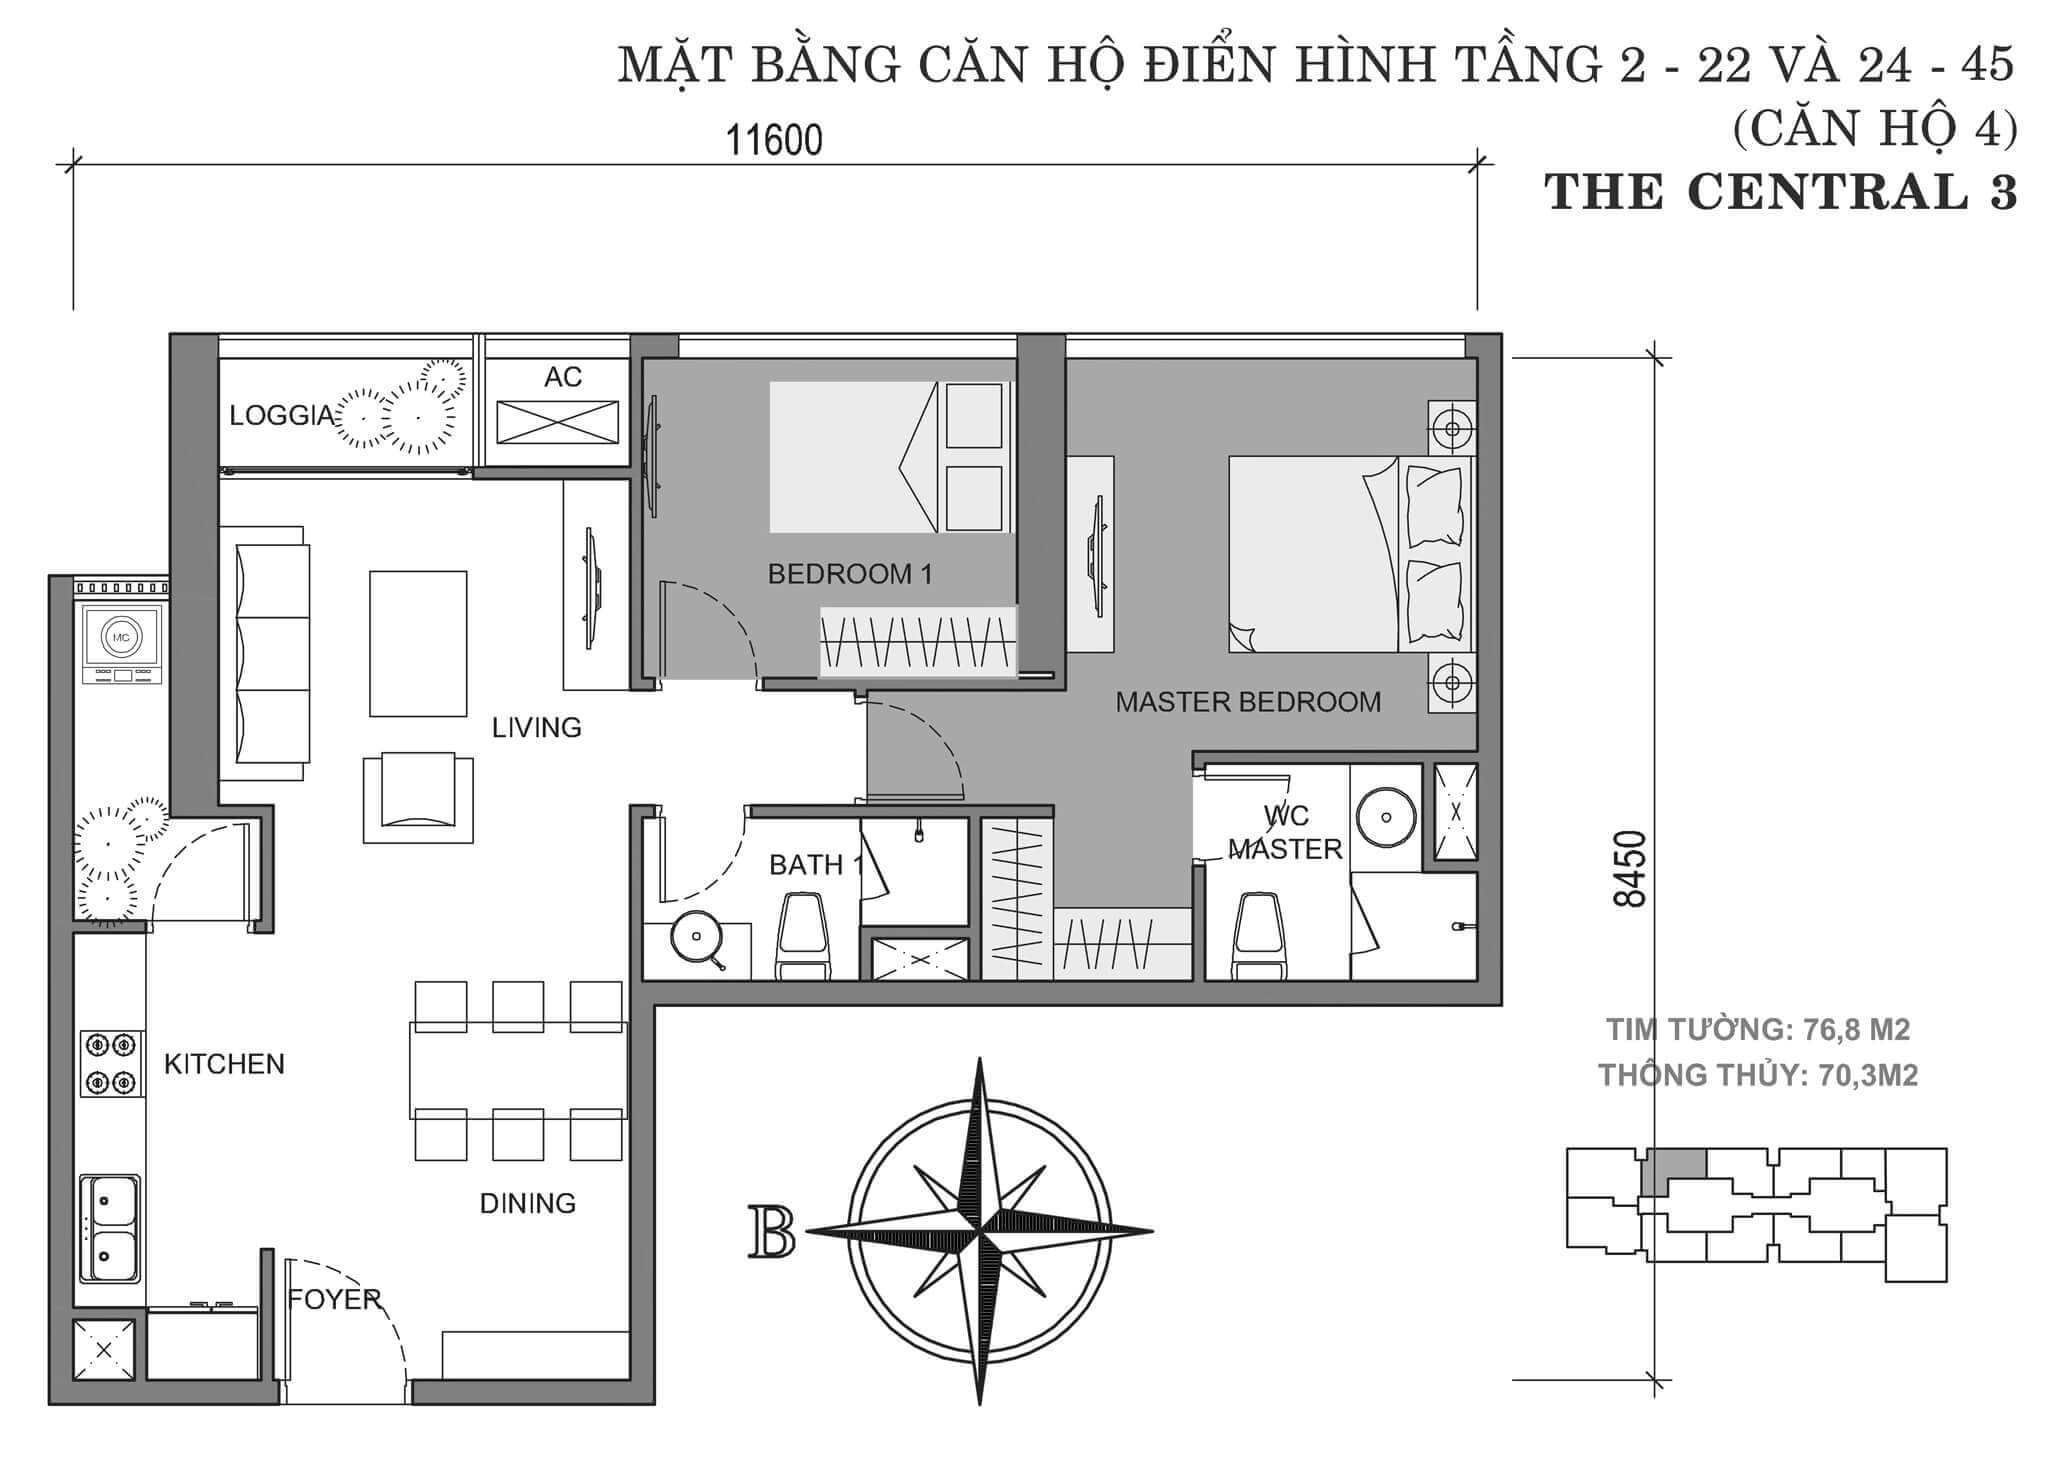 layout căn hộ số 4 tòa Central 3 tầng 2-45  